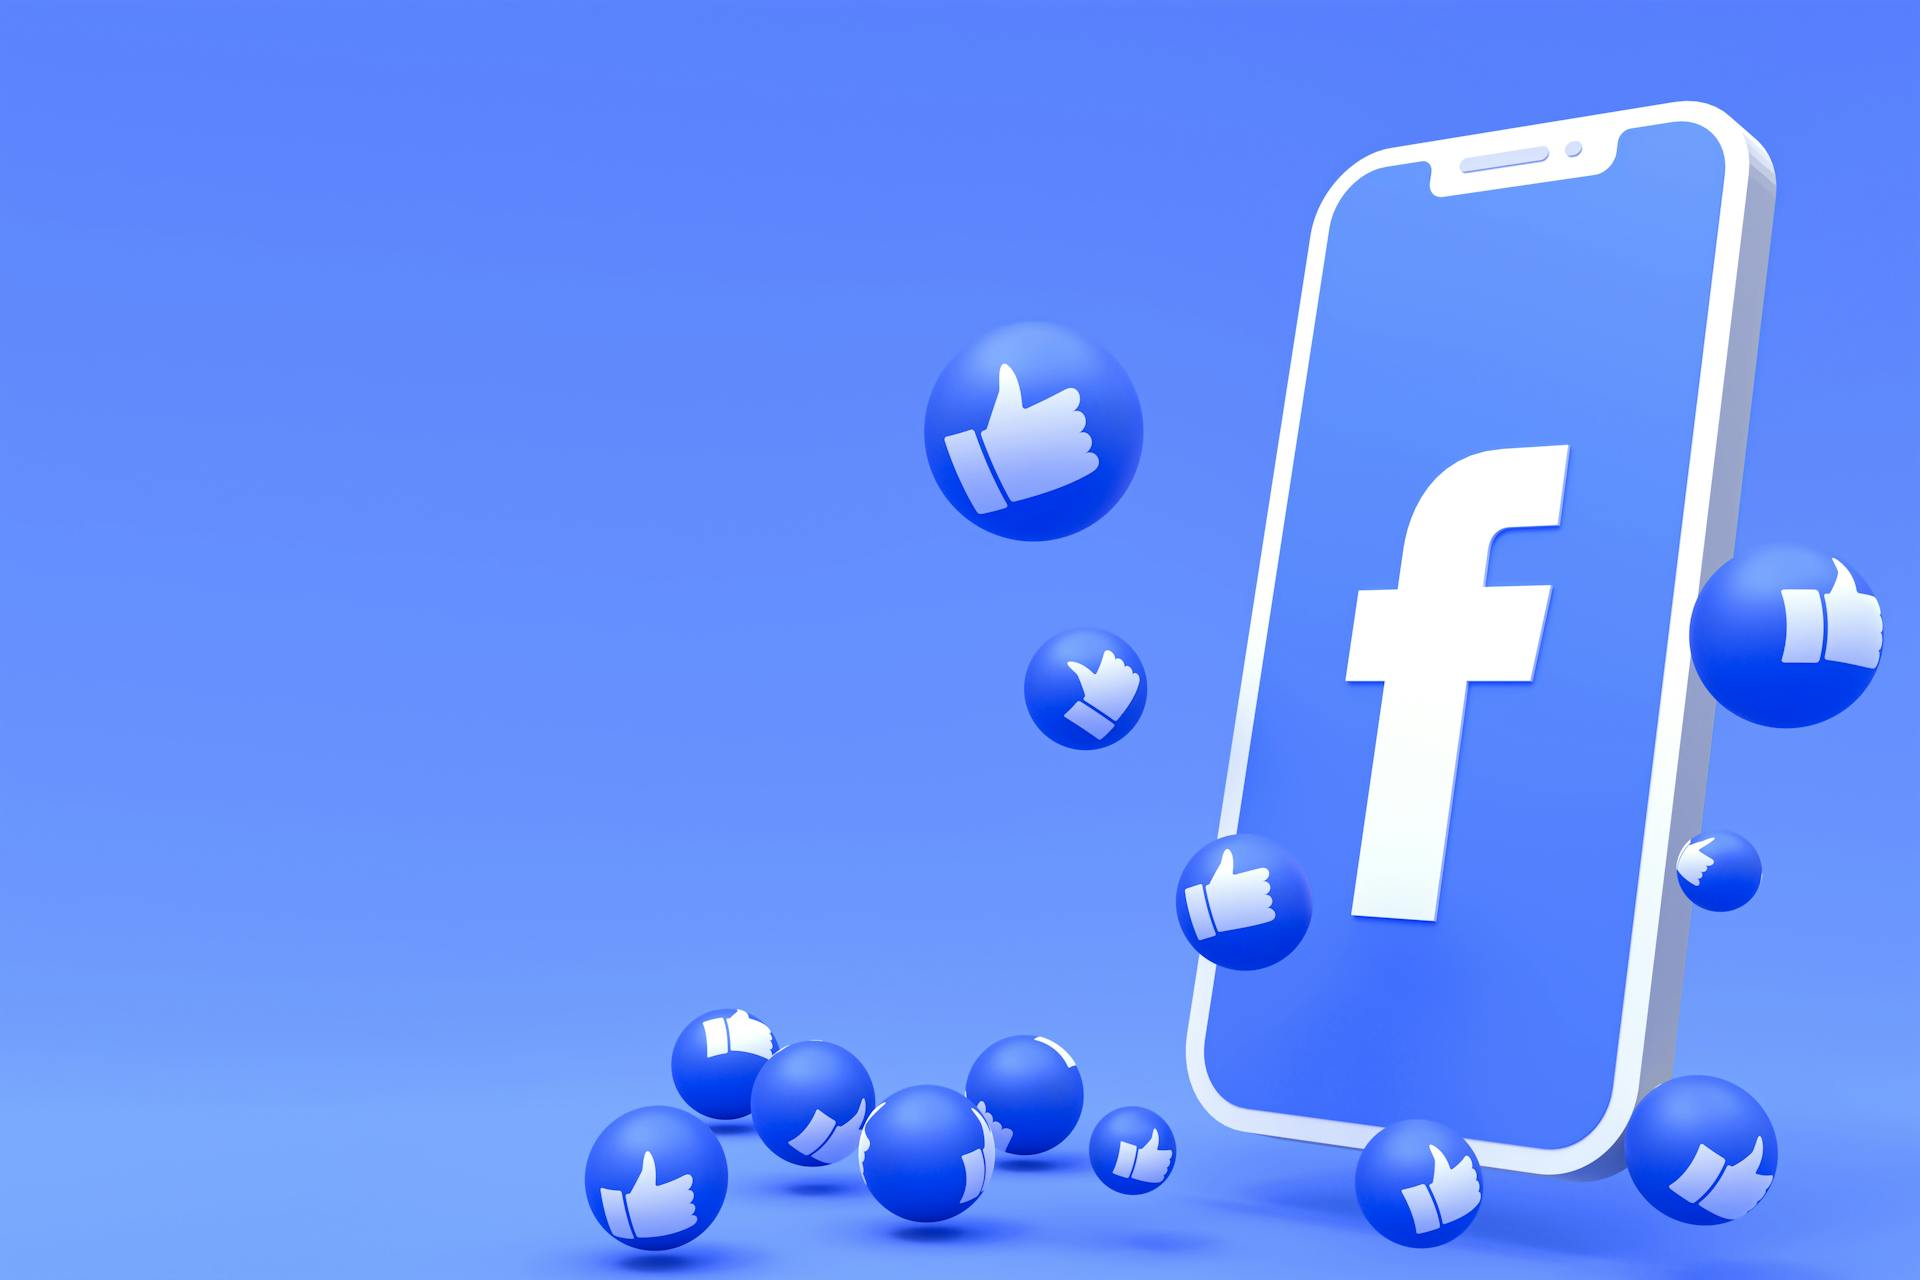 Blauer Hintergrund, davor ein Smartphone mit Facebook-Logo auf dem Bildschirm und rundherum sind blaue Blasen auf denen man einen "Daumen-hoch" sieht